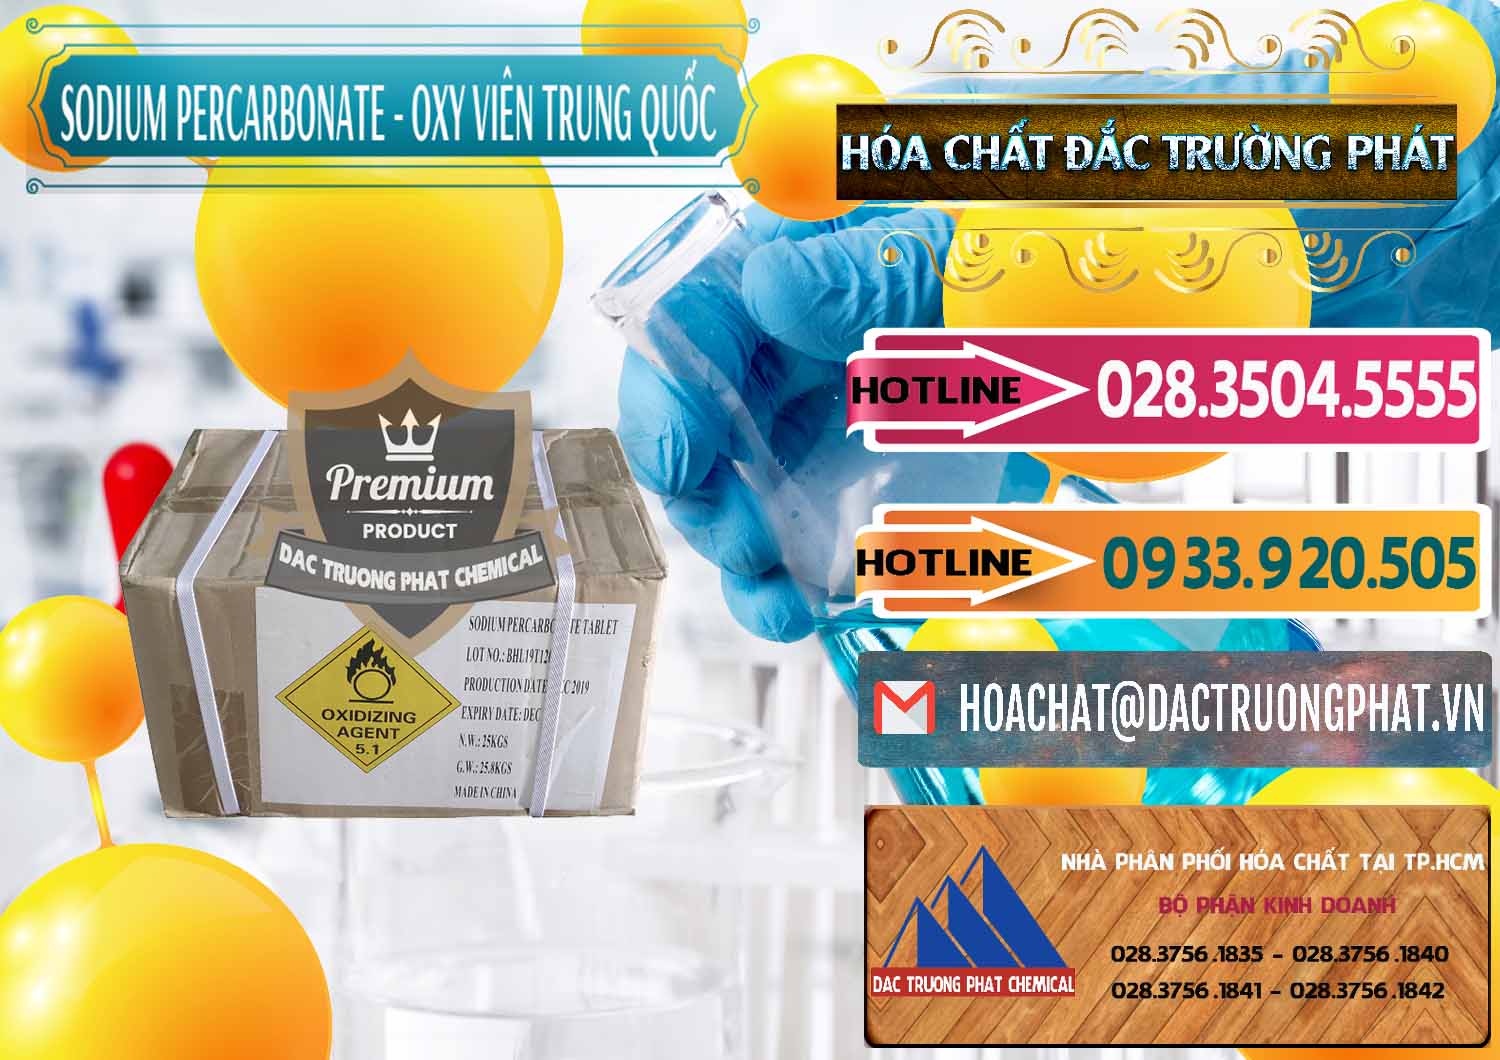 Cty phân phối & bán Sodium Percarbonate - Oxy Dạng Viên Trung Quốc China - 0329 - Cty phân phối và cung cấp hóa chất tại TP.HCM - dactruongphat.vn